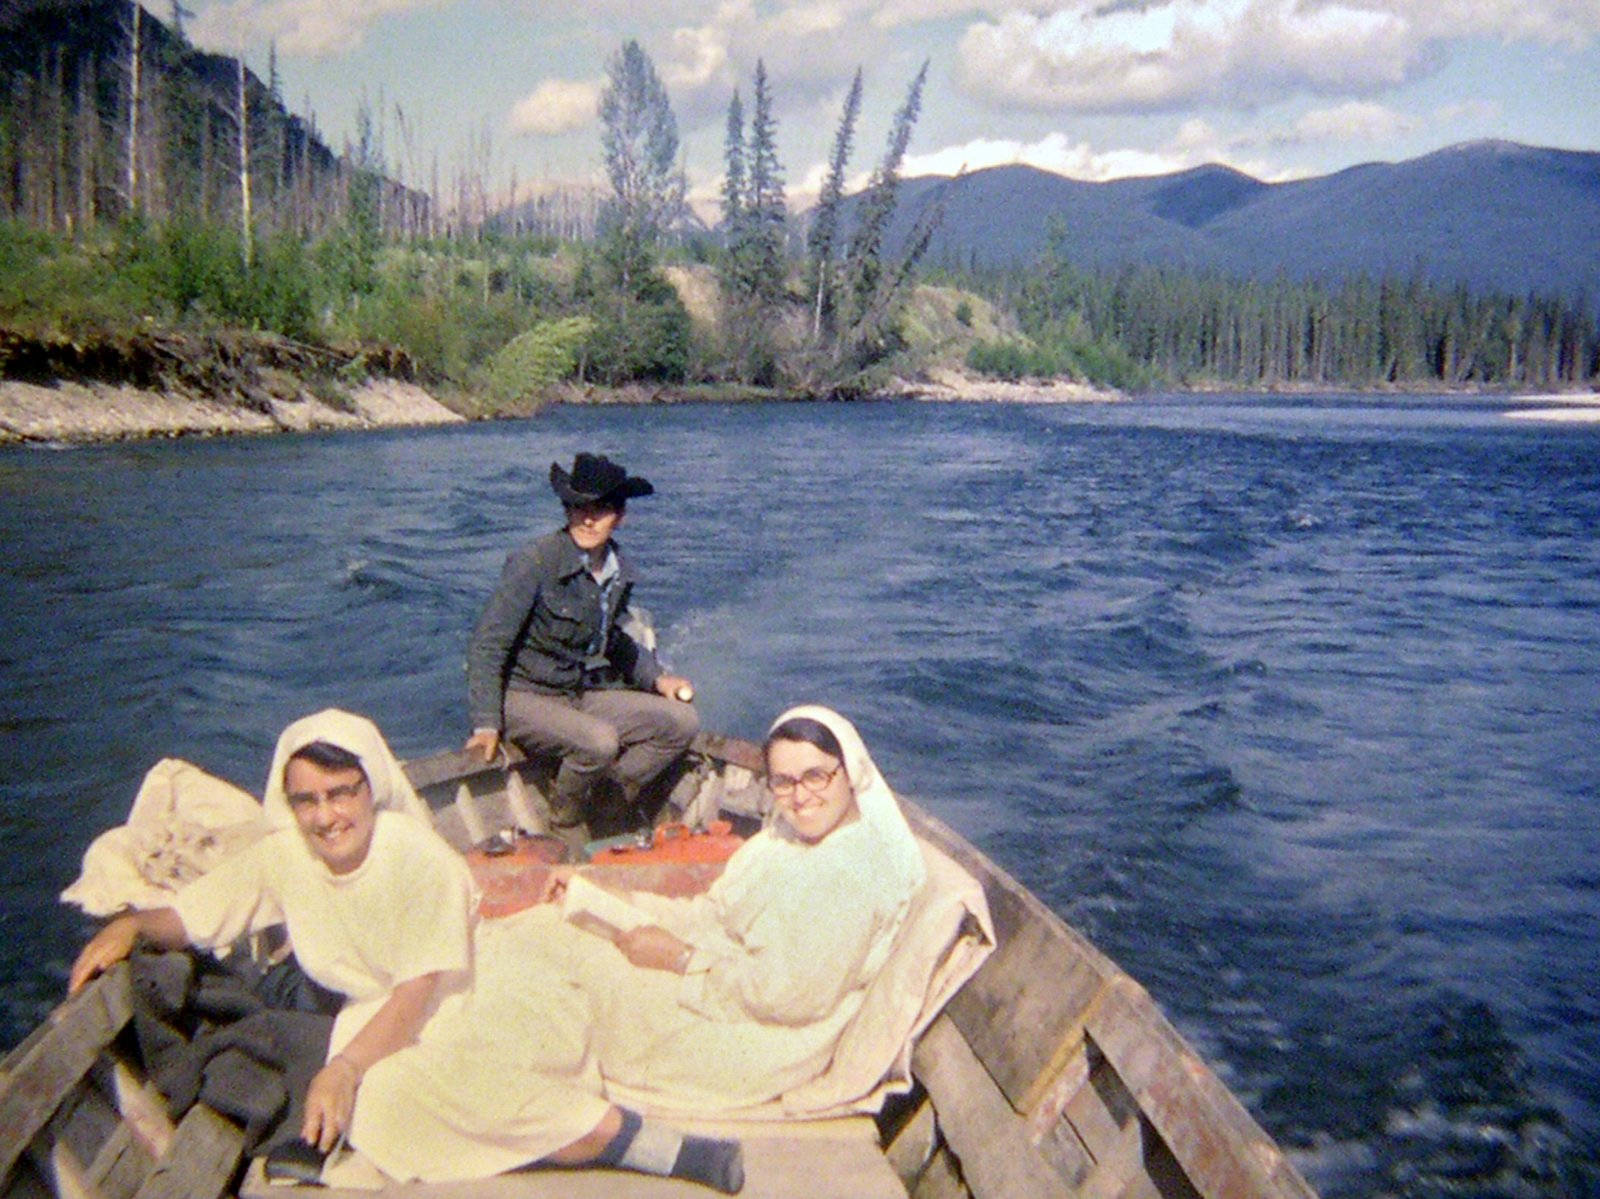 Chief Emil McCook, bringing visiting nuns up the Finlay river, July 1972.